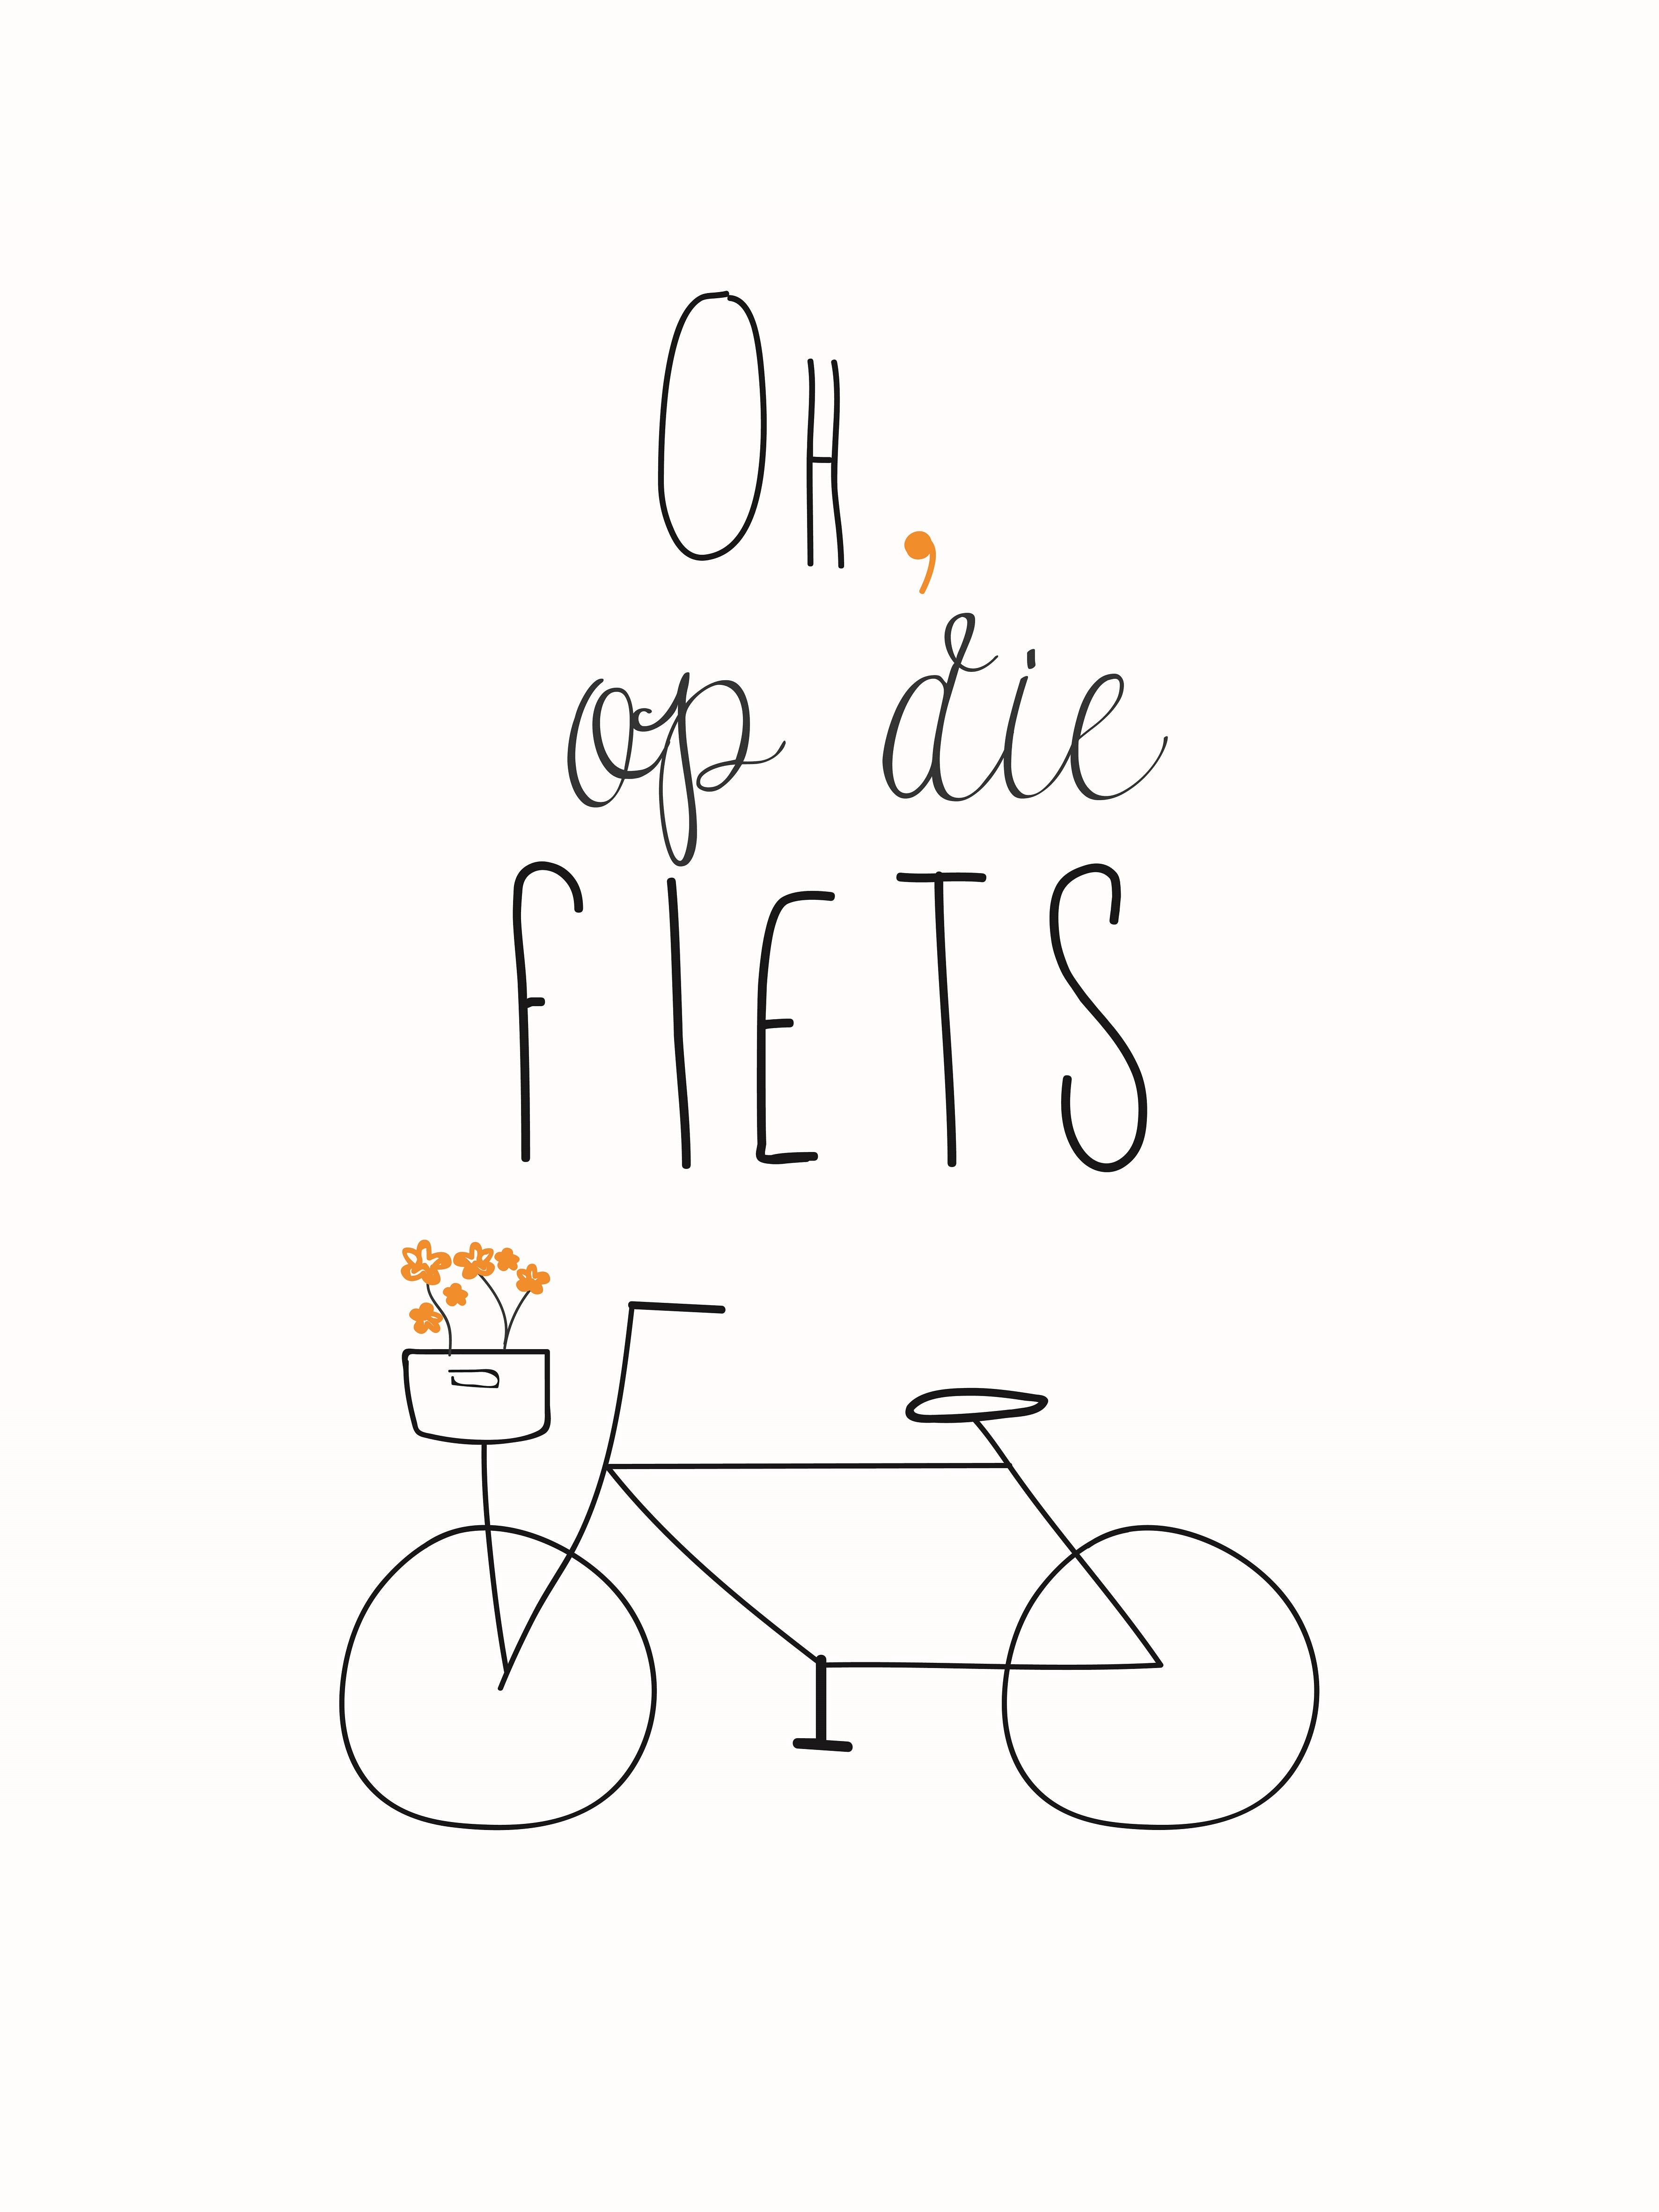 hier vervaldatum Hen Op die fiets! (wit) Poster – Deposterbaas